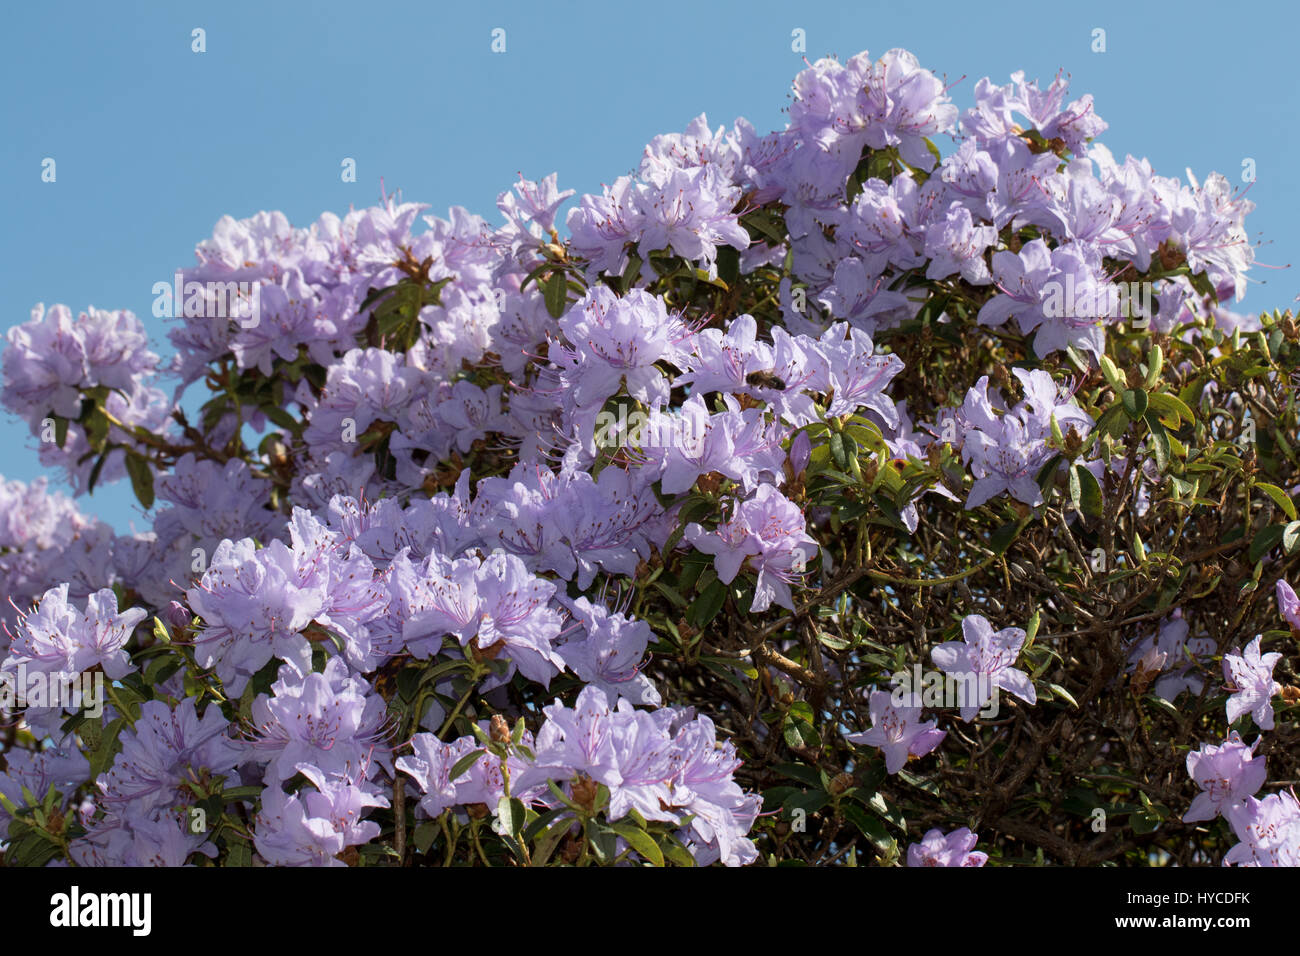 Mauve rhododendron bush Stock Photo